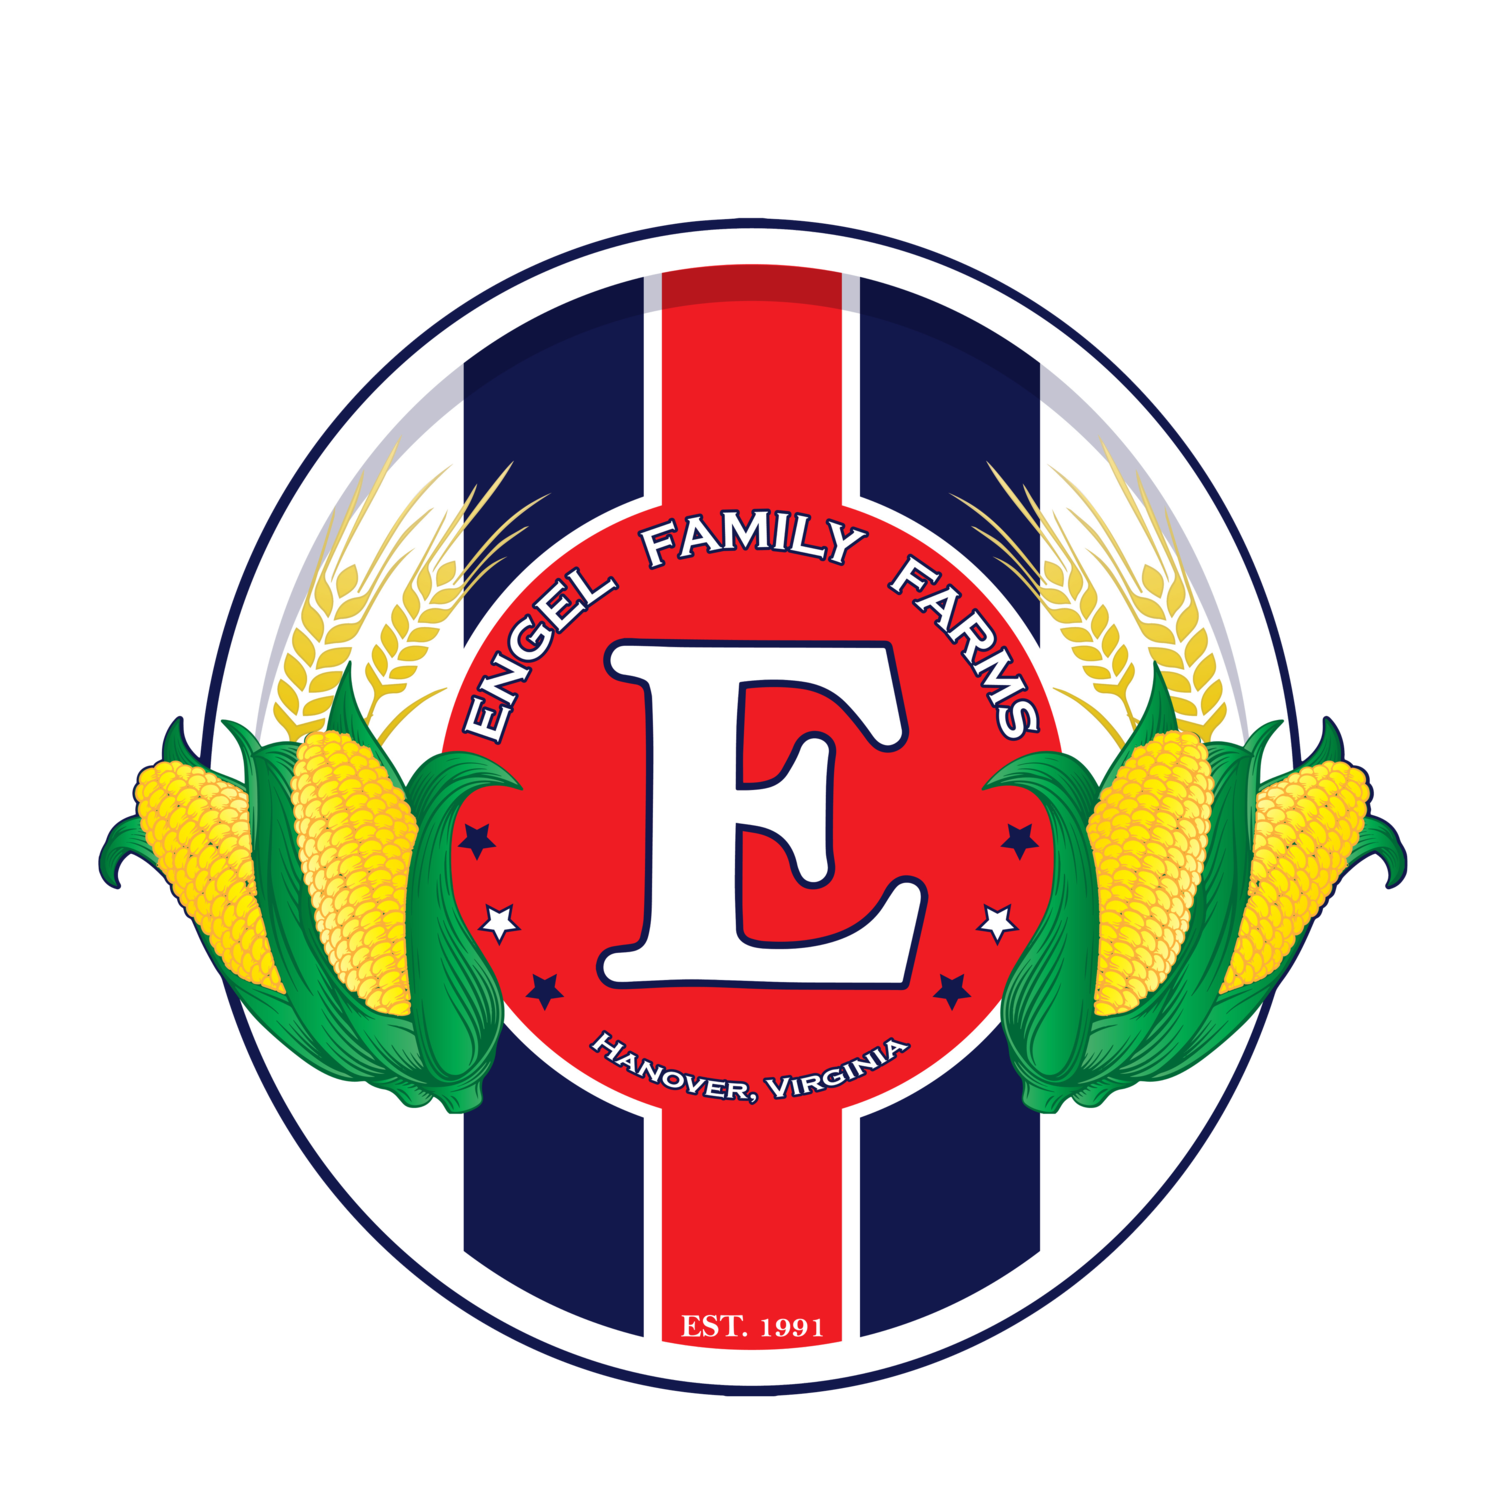 Engel Family Farms